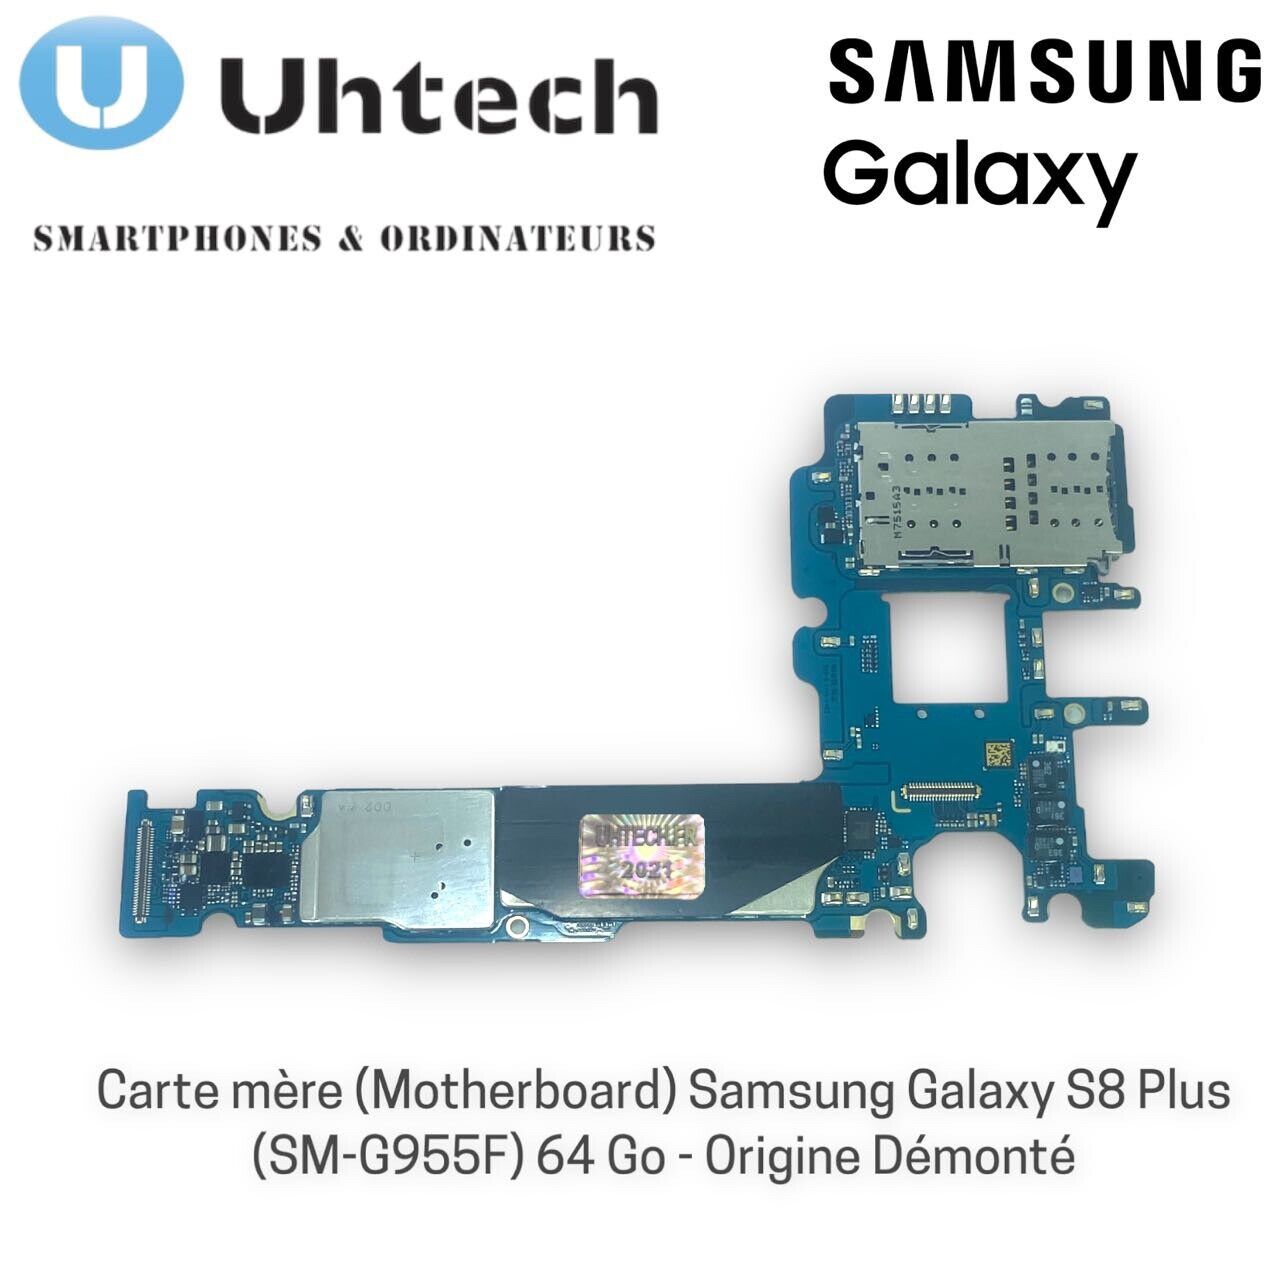 Carte mère (Motherboard) Samsung Galaxy S8 Plus SM-G955F 64 Go - Origine Démonté n° 2